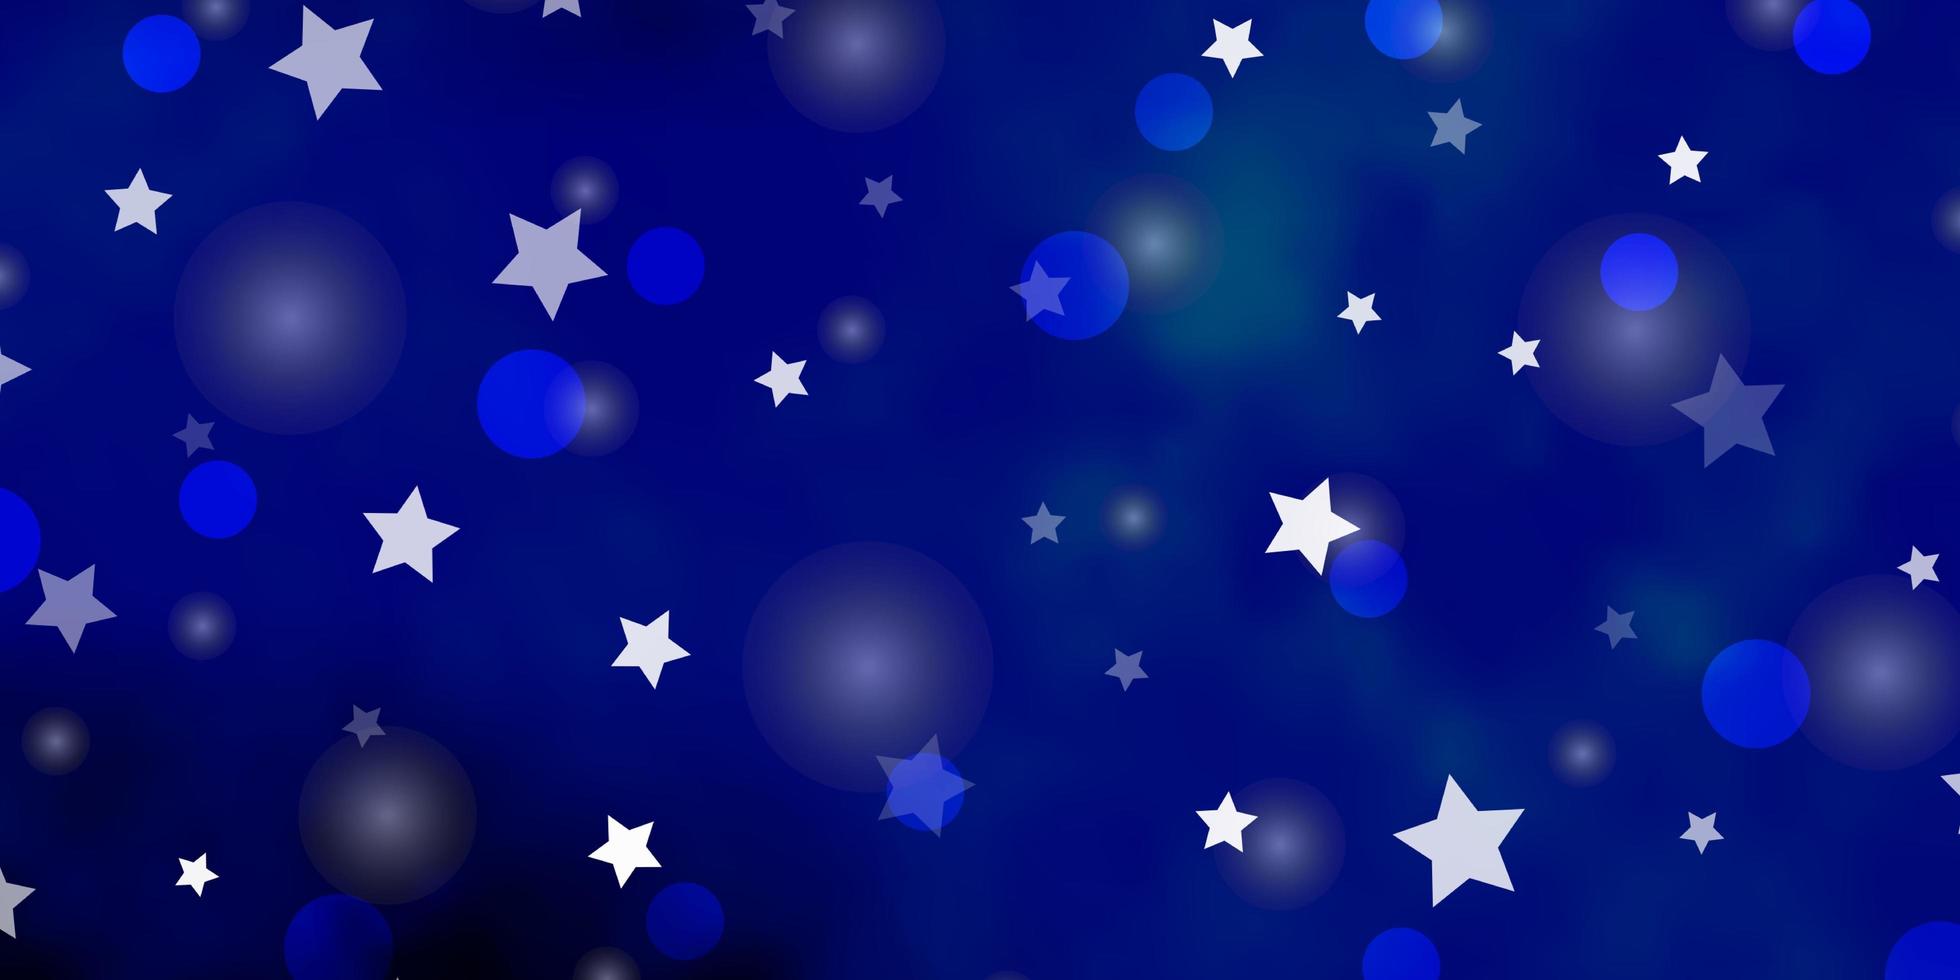 sfondo vettoriale blu scuro con cerchi, stelle. illustrazione con set di sfere astratte colorate, stelle. design per tessuti, tessuti, sfondi.